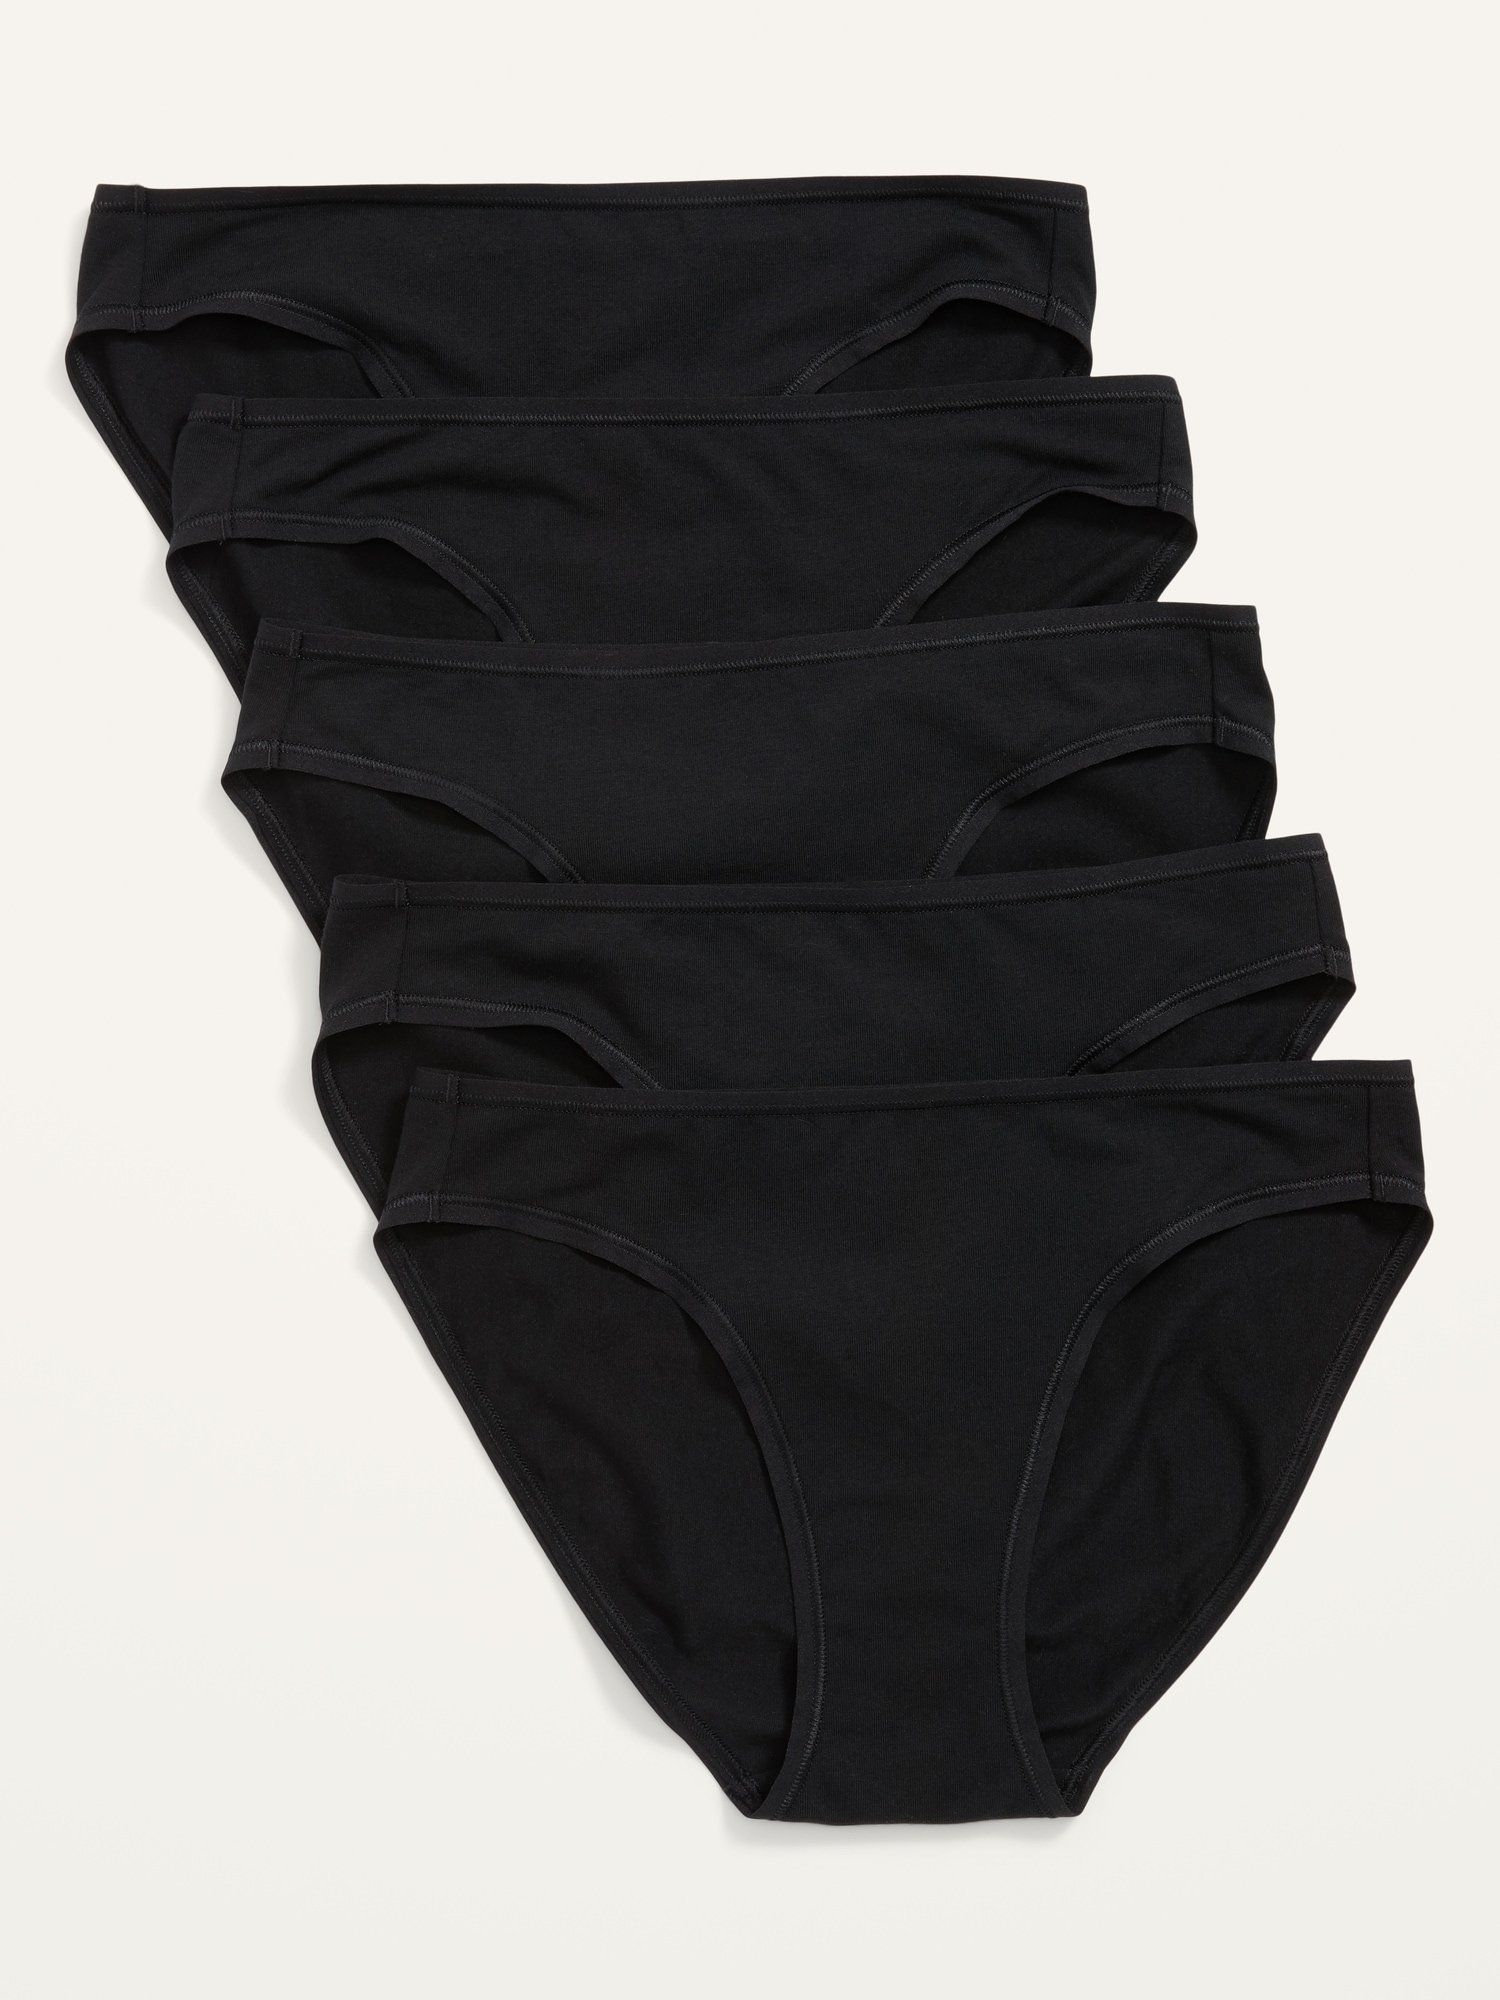  Black Cotton Underwear Women